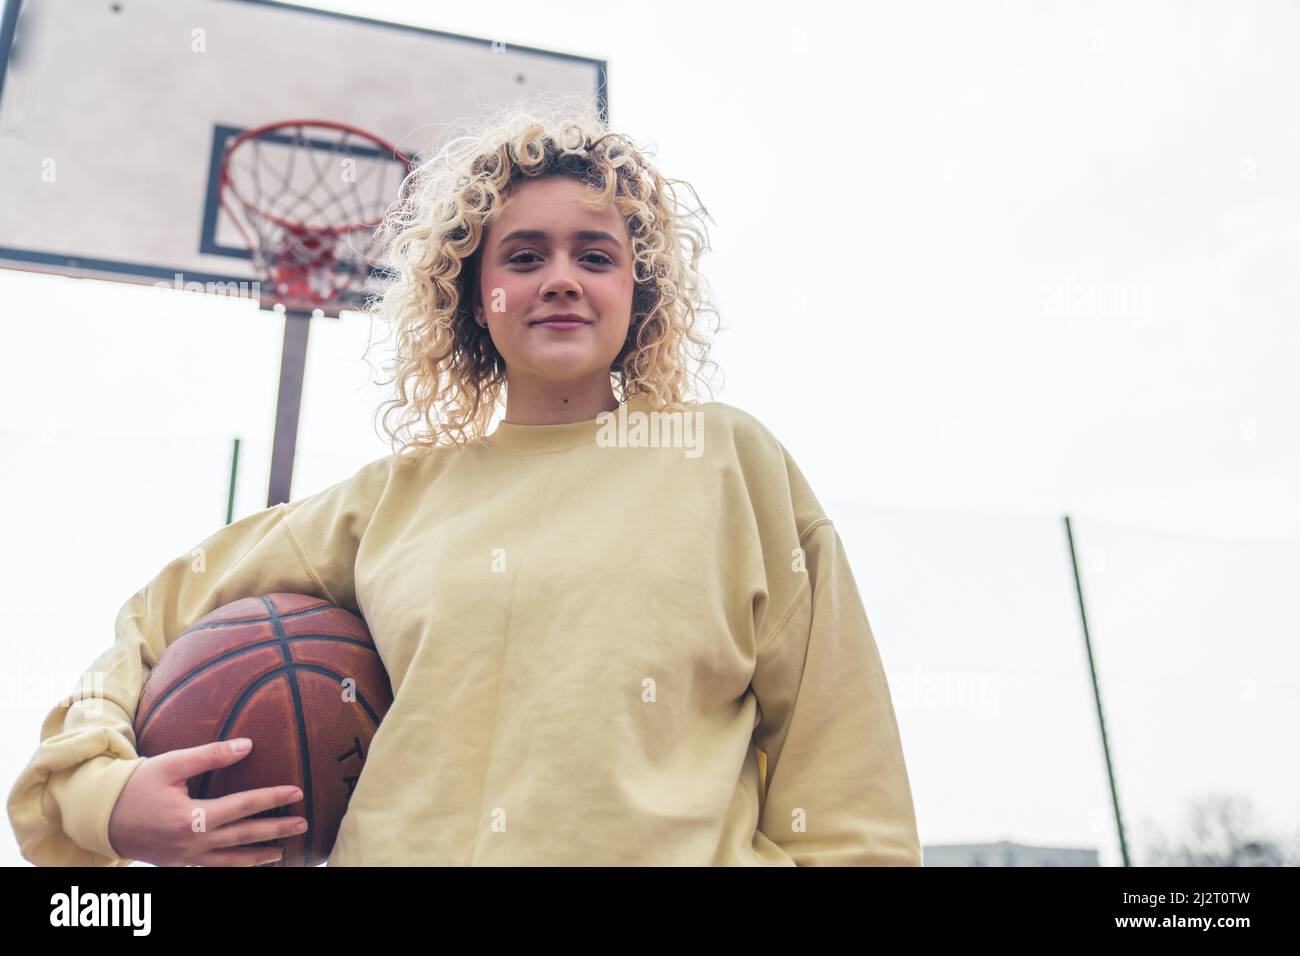 Bonita joven rubia sostiene una pelota de baloncesto en la cancha, sonriendo a la cámara medio tiro copia espacio . Fotografías de alta calidad Foto de stock